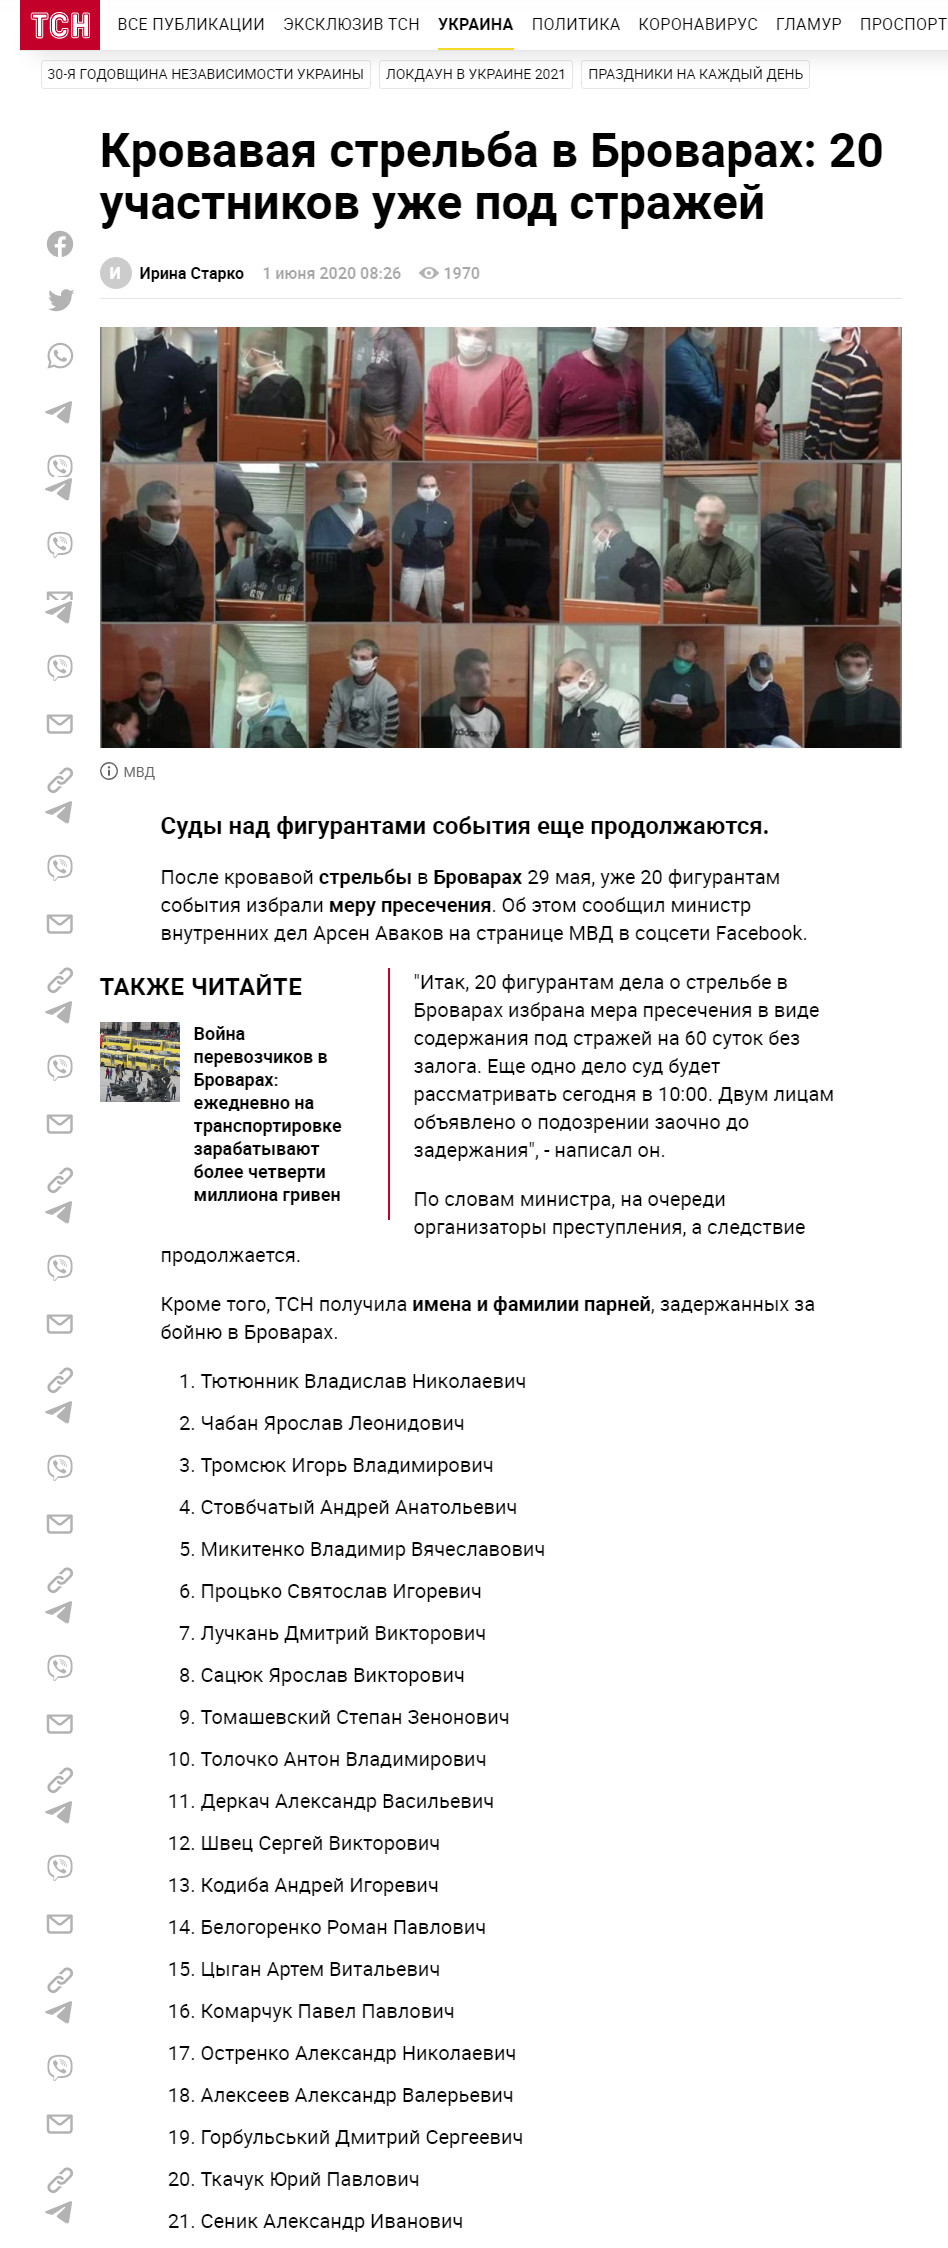 https://tsn.ua/ru/ukrayina/krovavaya-strelba-v-brovarah-20-uchastnikov-uzhe-pod-strazhey-1557405.html